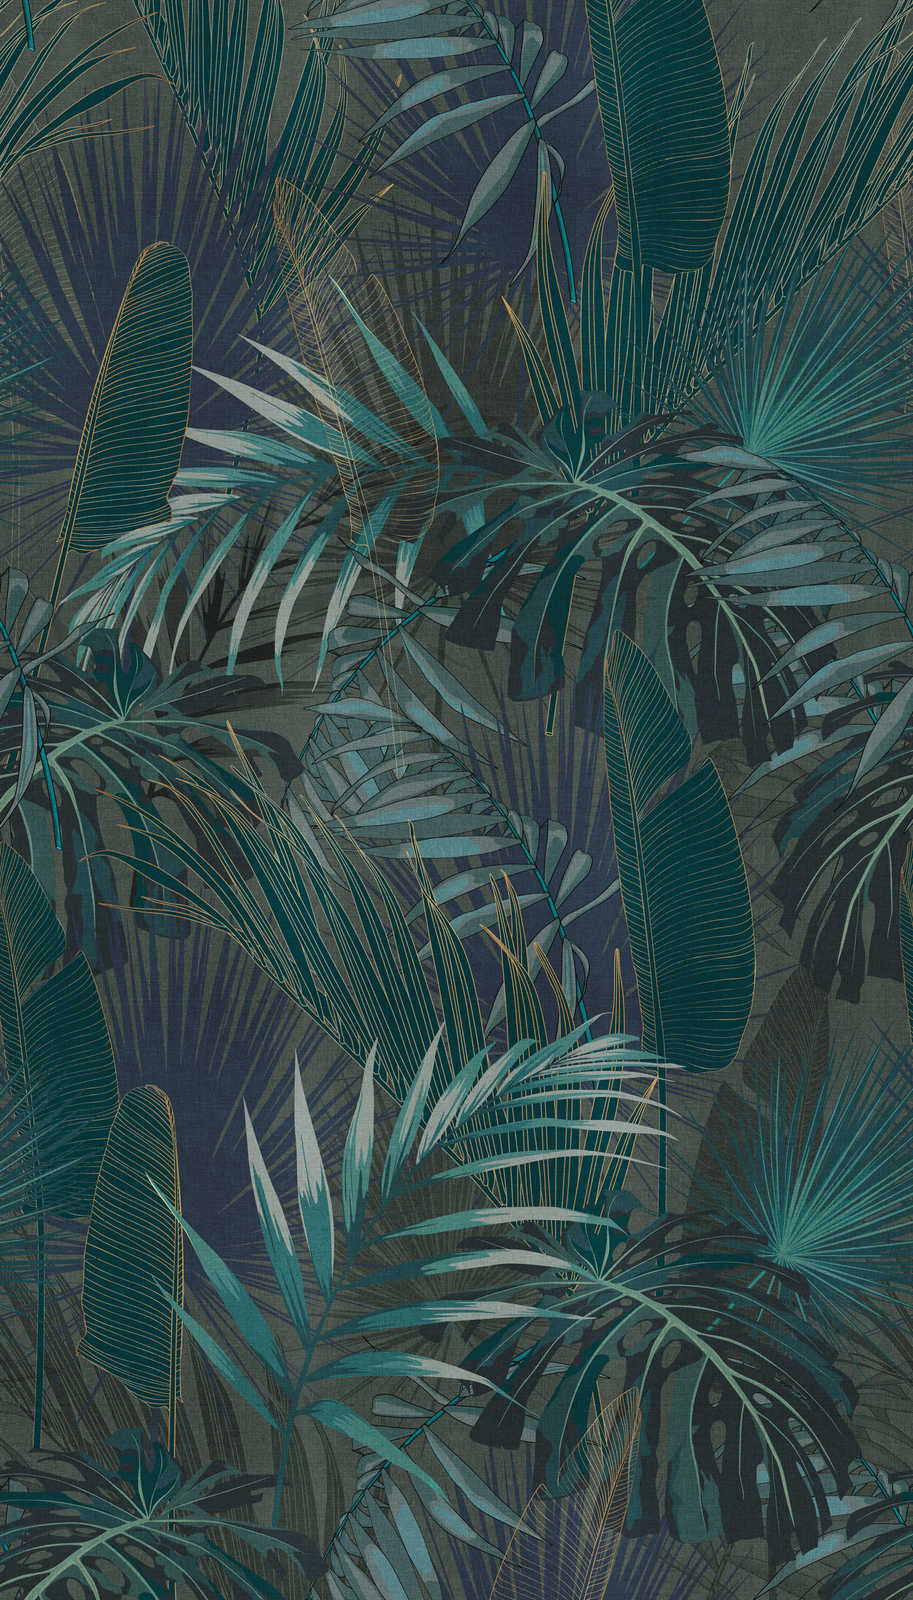             Papel pintado con motivo de hojas de selva - petróleo, azul, verde
        